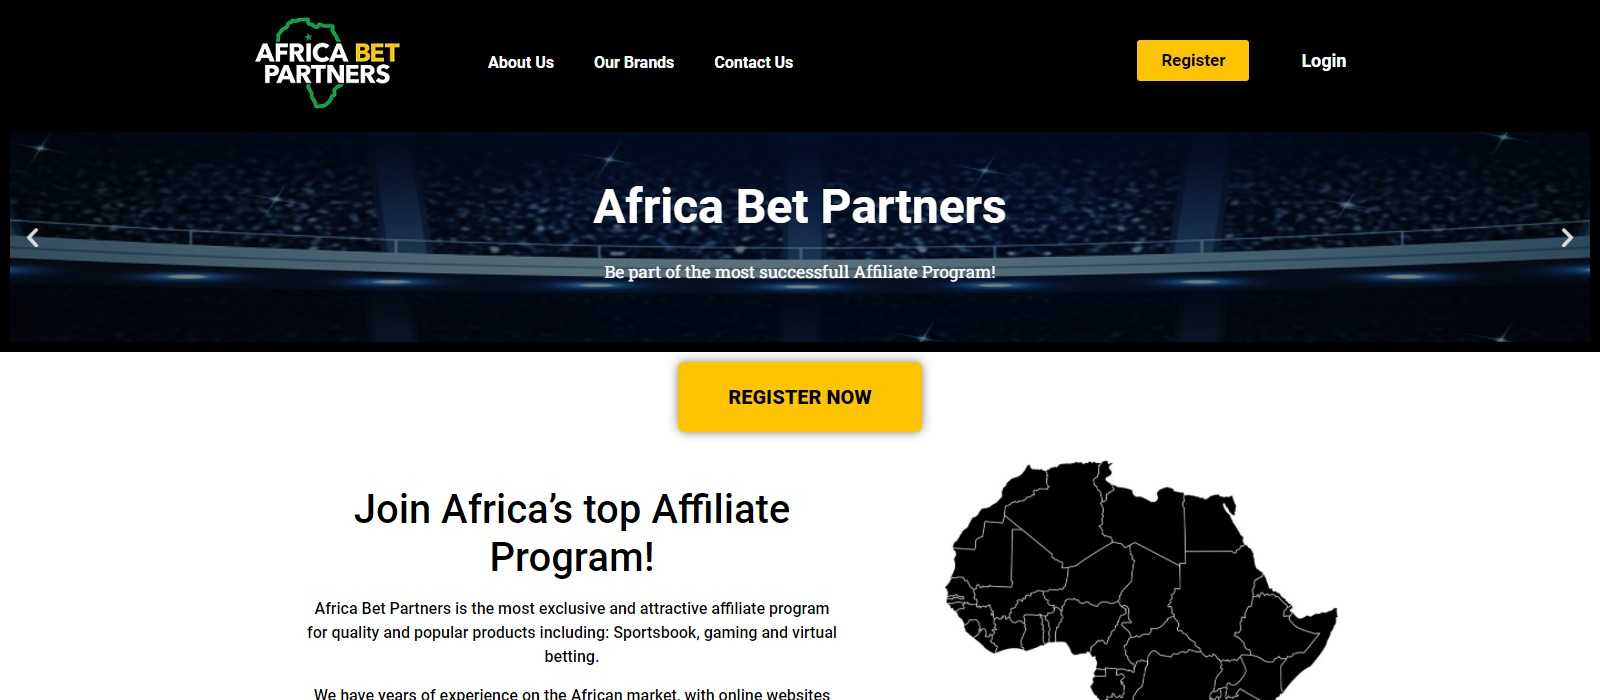 Africa Bet Partners Affiliates Program Review: 20% - 25% Recurring Revenue Share